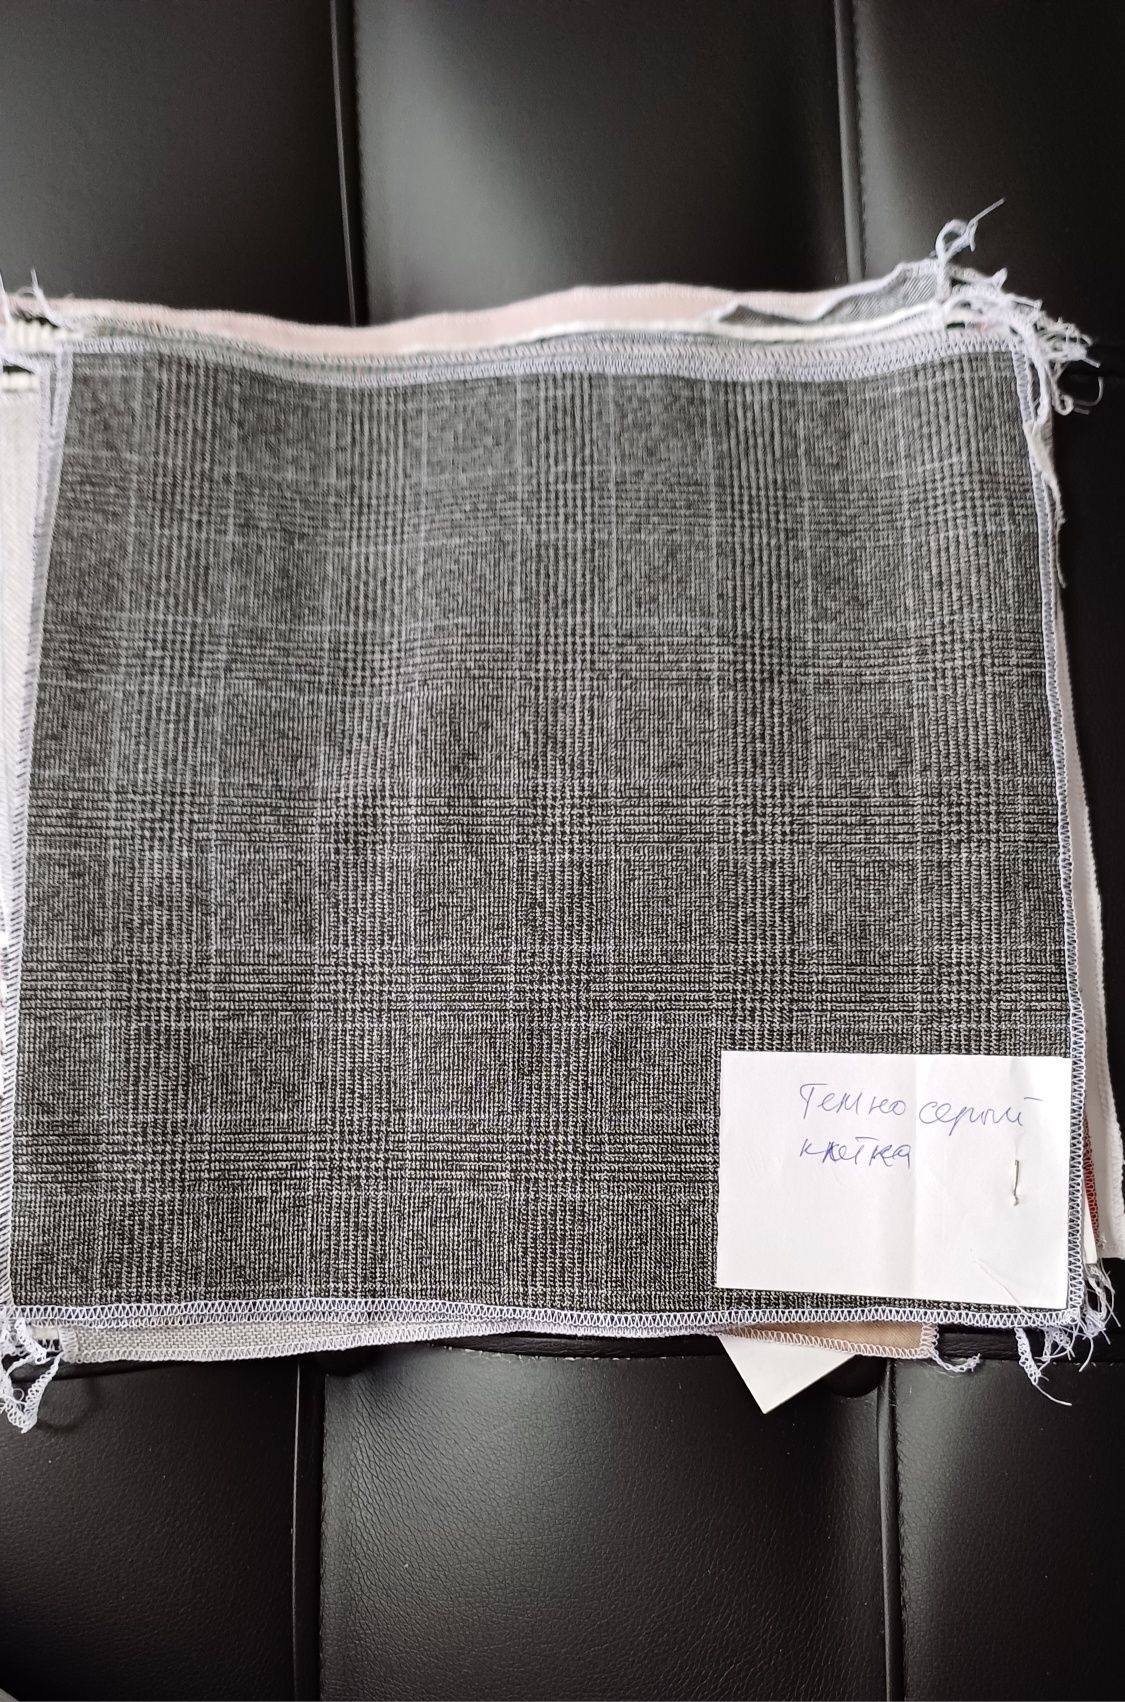 Турецкие ткани от 20 метров, цена 850 тг за метр